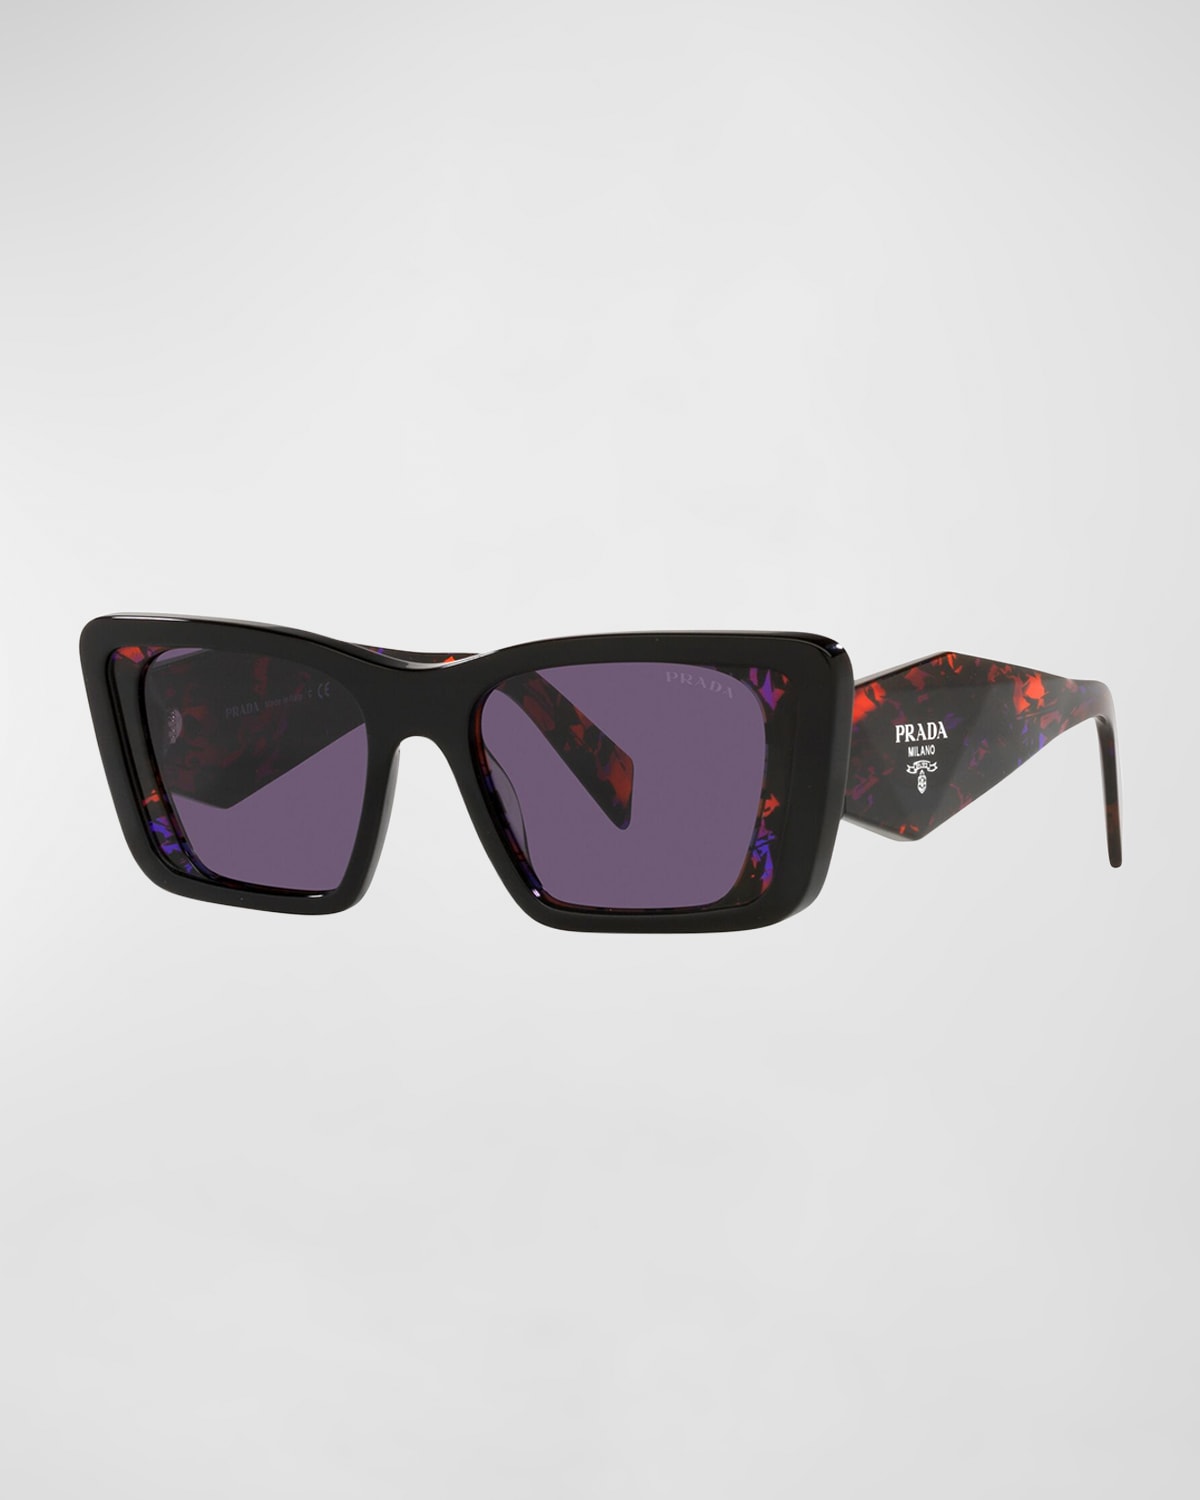 Designer Prada Sunglasses | Neiman Marcus